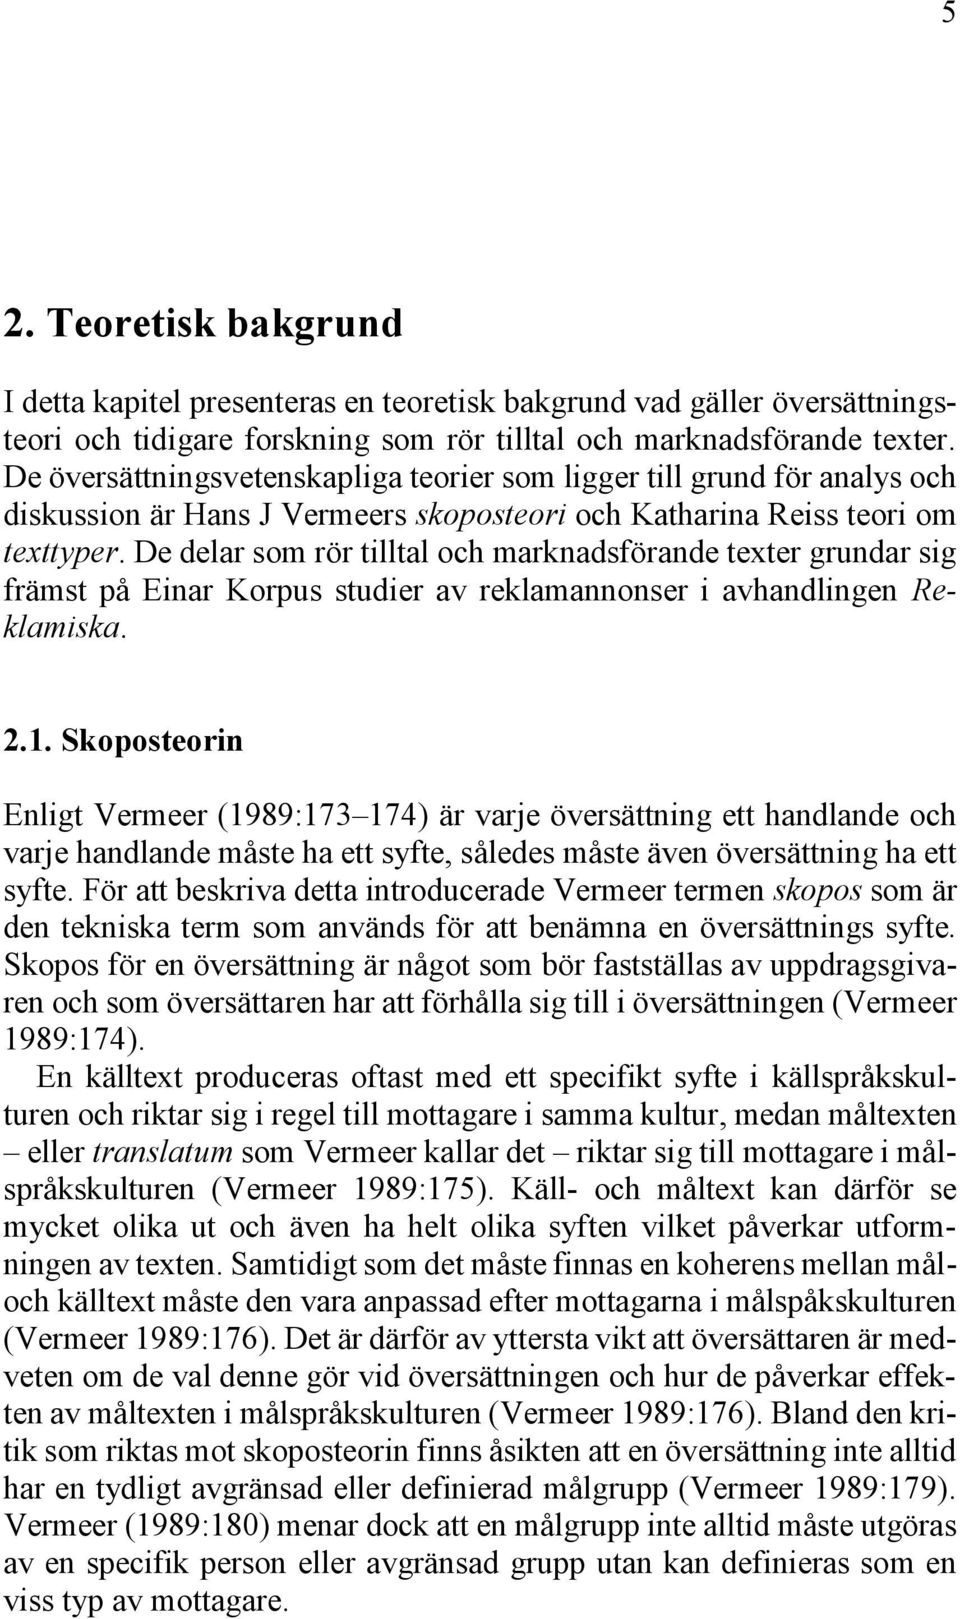 De delar som rör tilltal och marknadsförande texter grundar sig främst på Einar Korpus studier av reklamannonser i avhandlingen Reklamiska. 2.1.